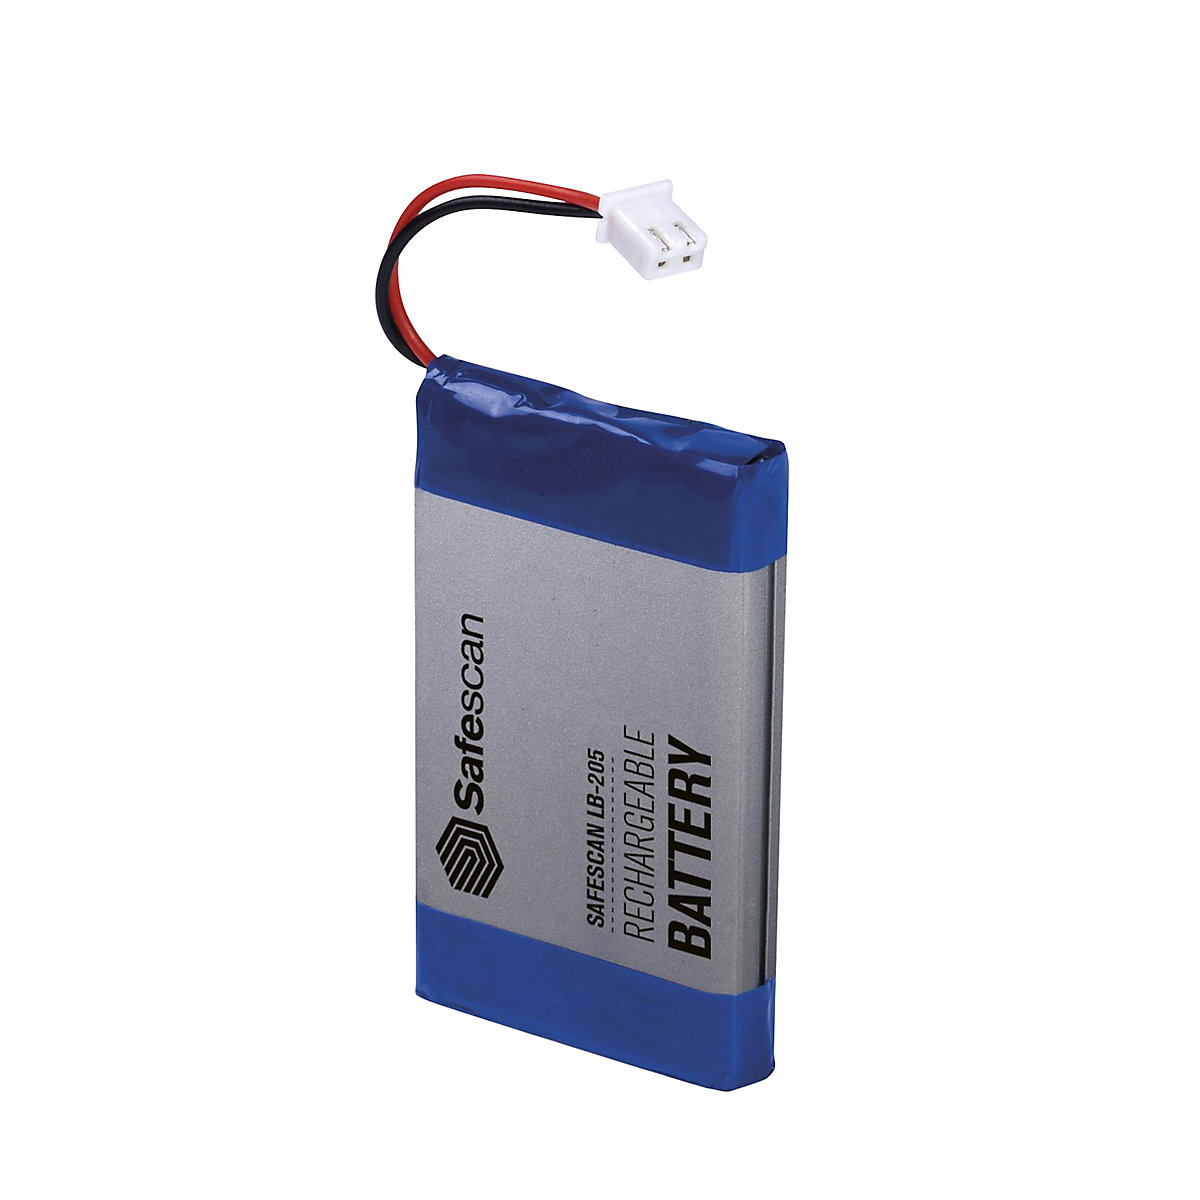 Baterija s mogućnošću punjenja - Safescan